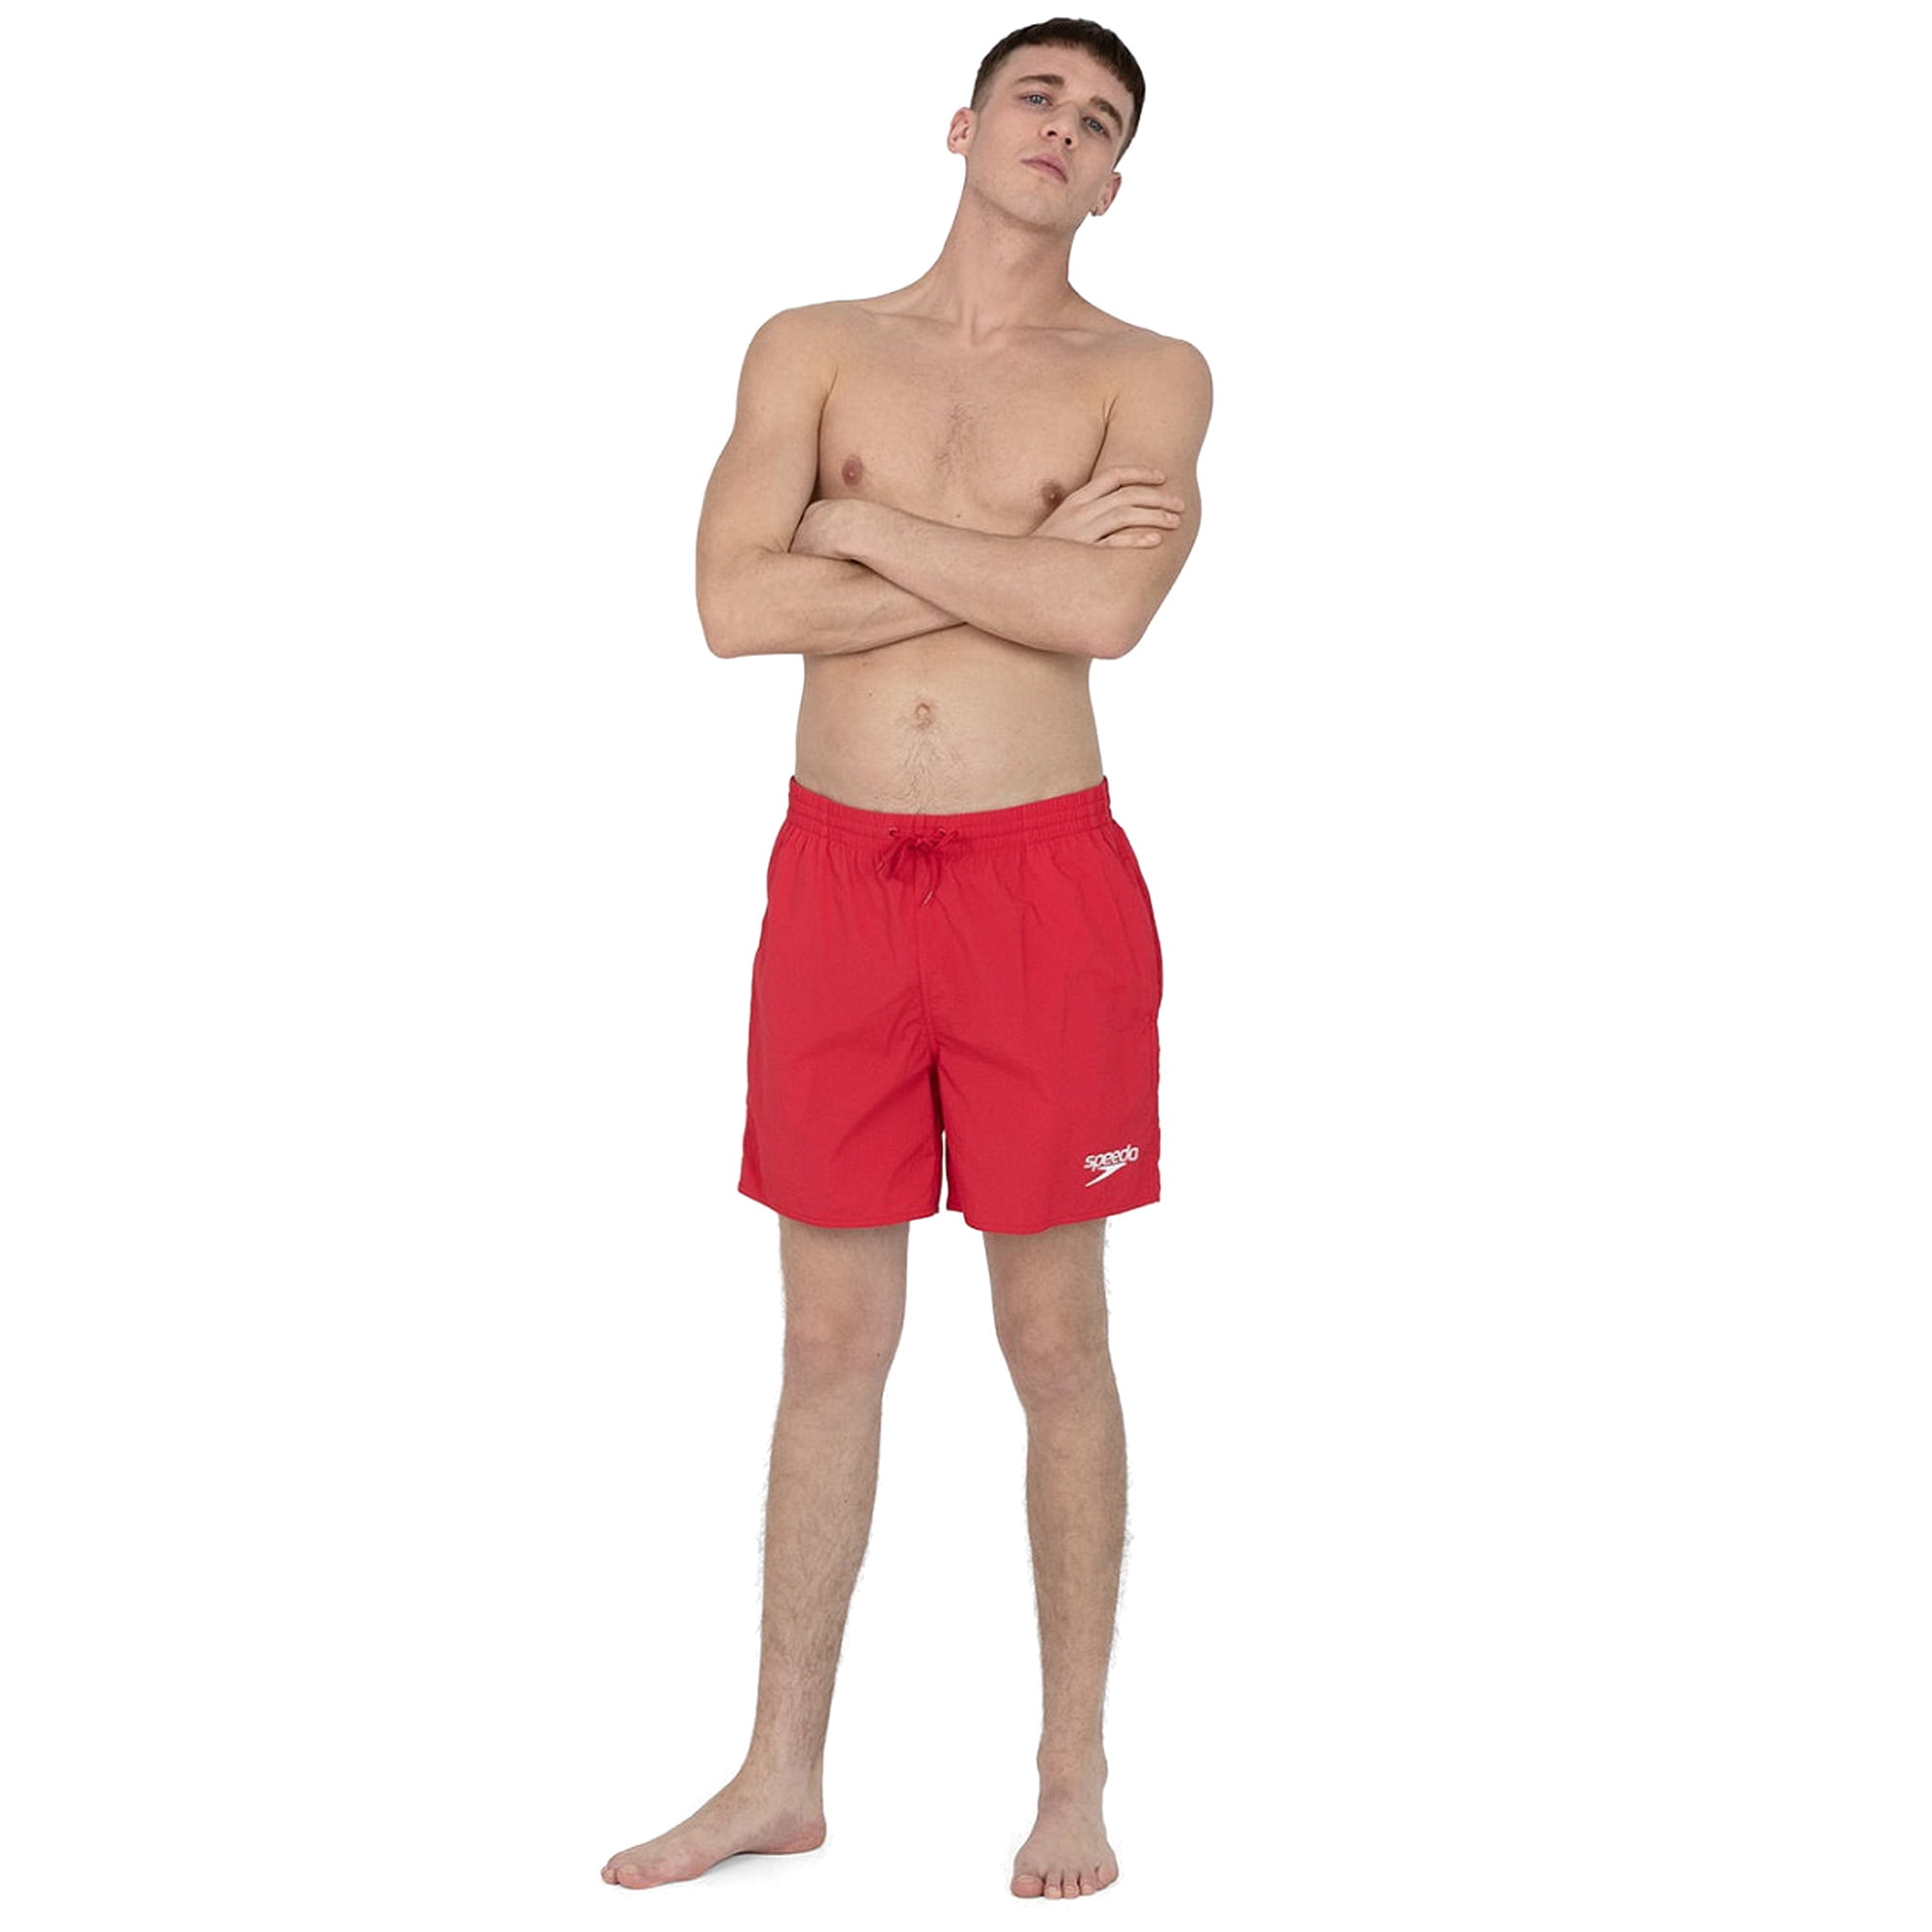 Speedo Mens Swim Shorts Colourblock 16" Watershort Pool Beach Swimming Trunks 